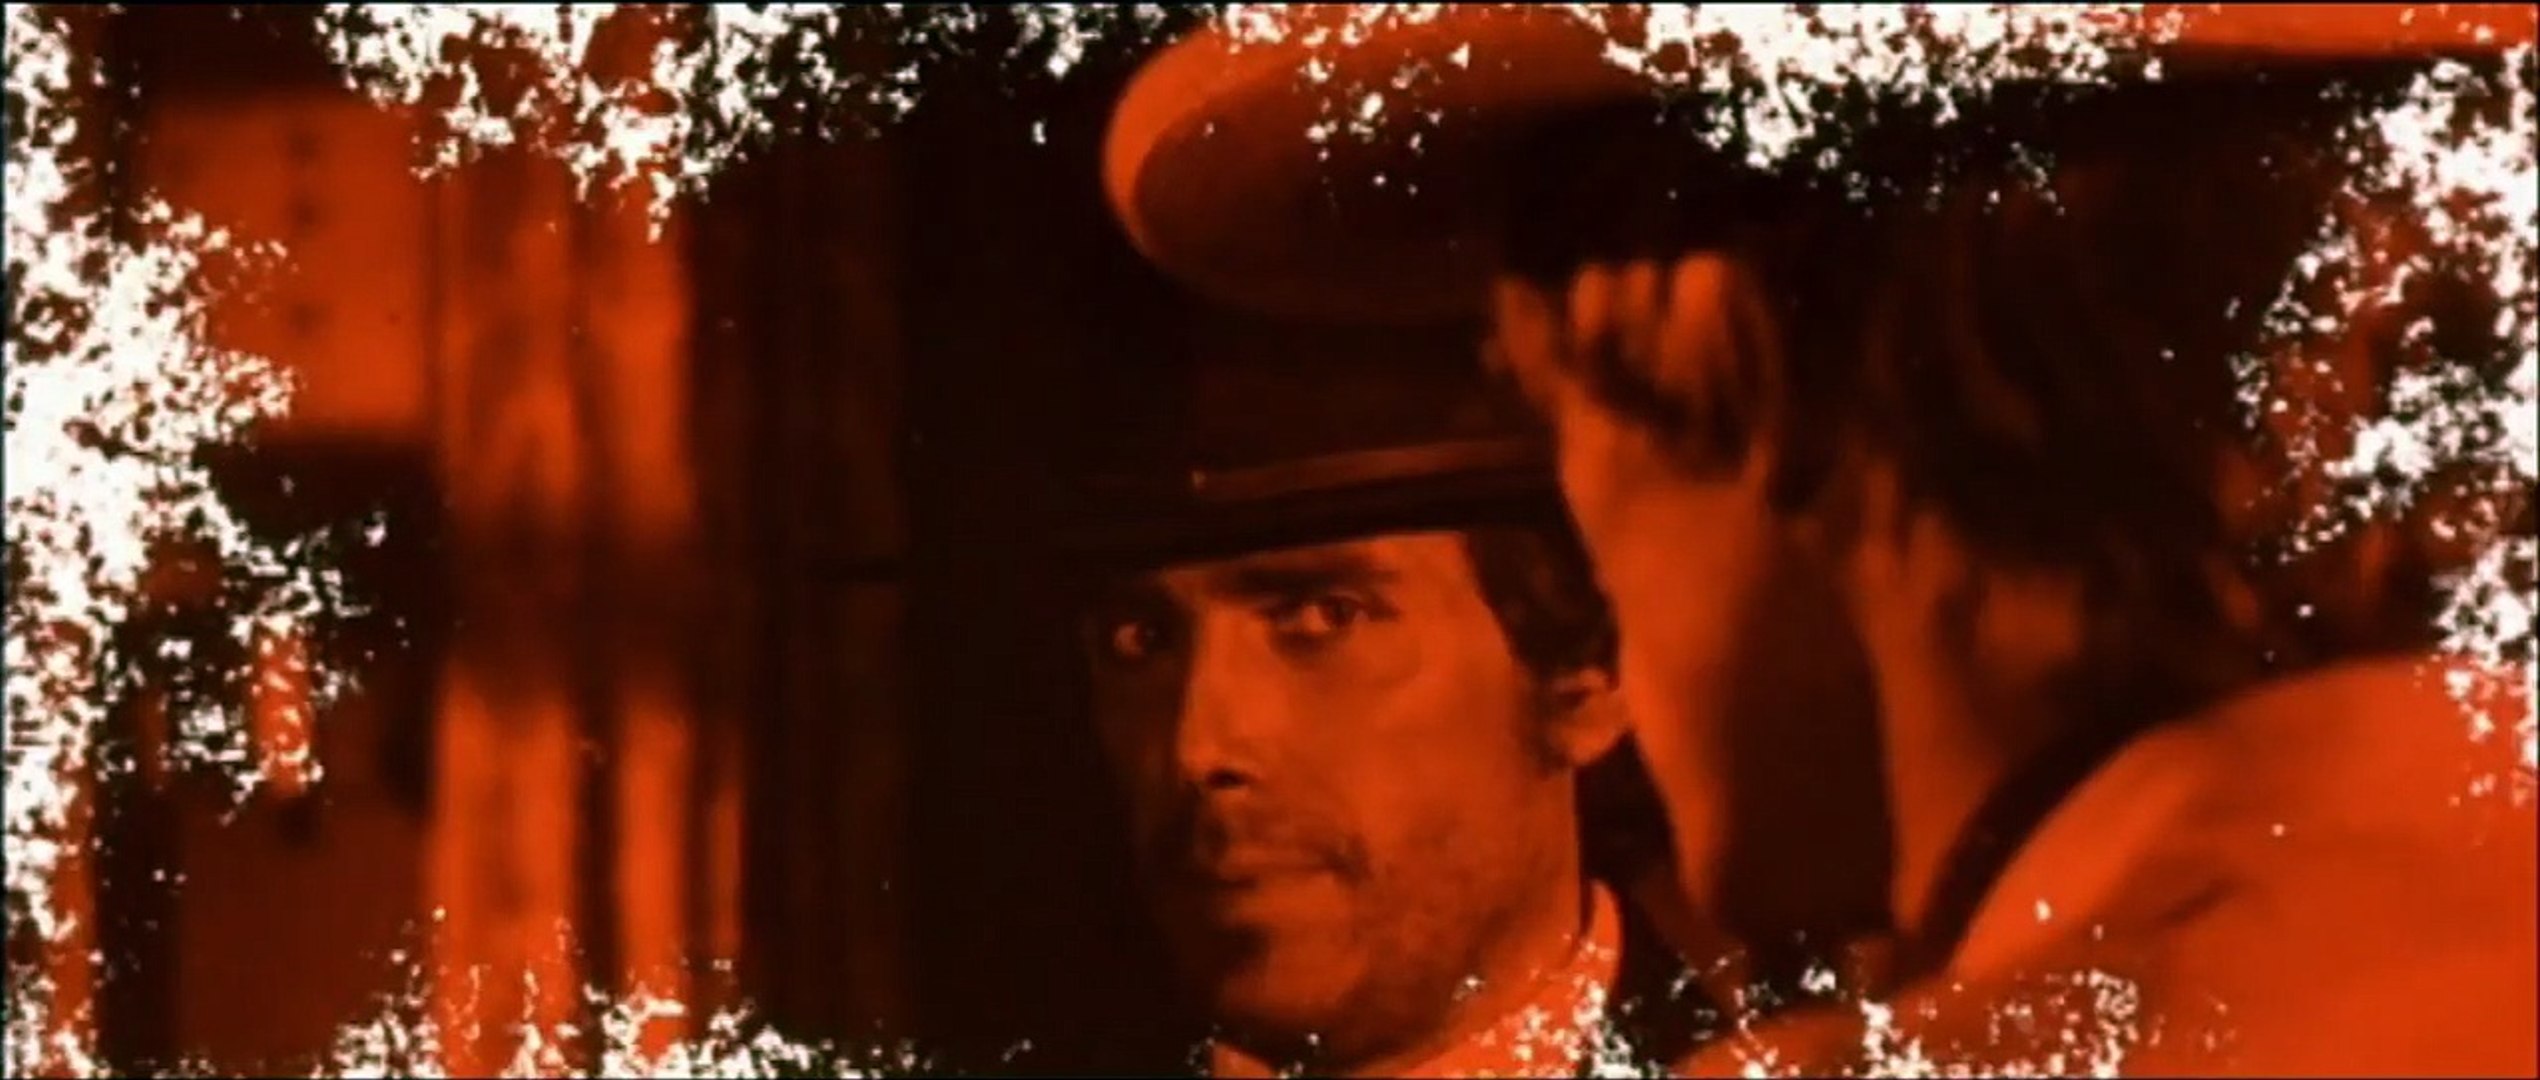 Django arrive, préparez vos cercueils (1970) en français HD (FRENCH)  Streaming - Vidéo Dailymotion